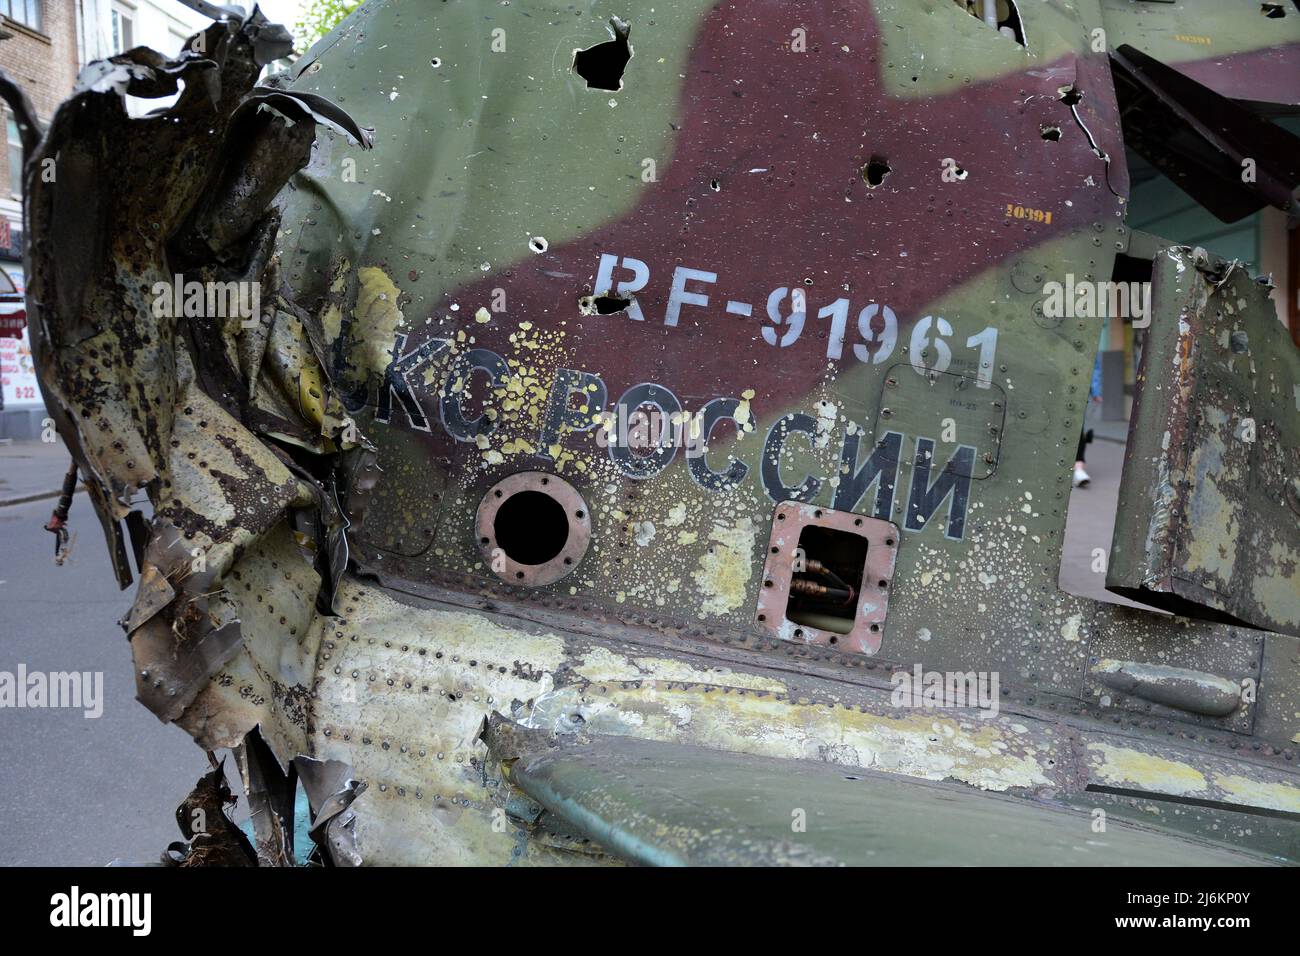 Région de Kiev, Ukraine - 02 mai 2022, fragment de queue d'un avion militaire russe SU-25, détruit par l'armée ukrainienne dans la région de Kiev. La Russie a envahi l'Ukraine le 24 février 2022, déclenchant la plus grande attaque militaire en Europe depuis la Seconde Guerre mondiale Banque D'Images